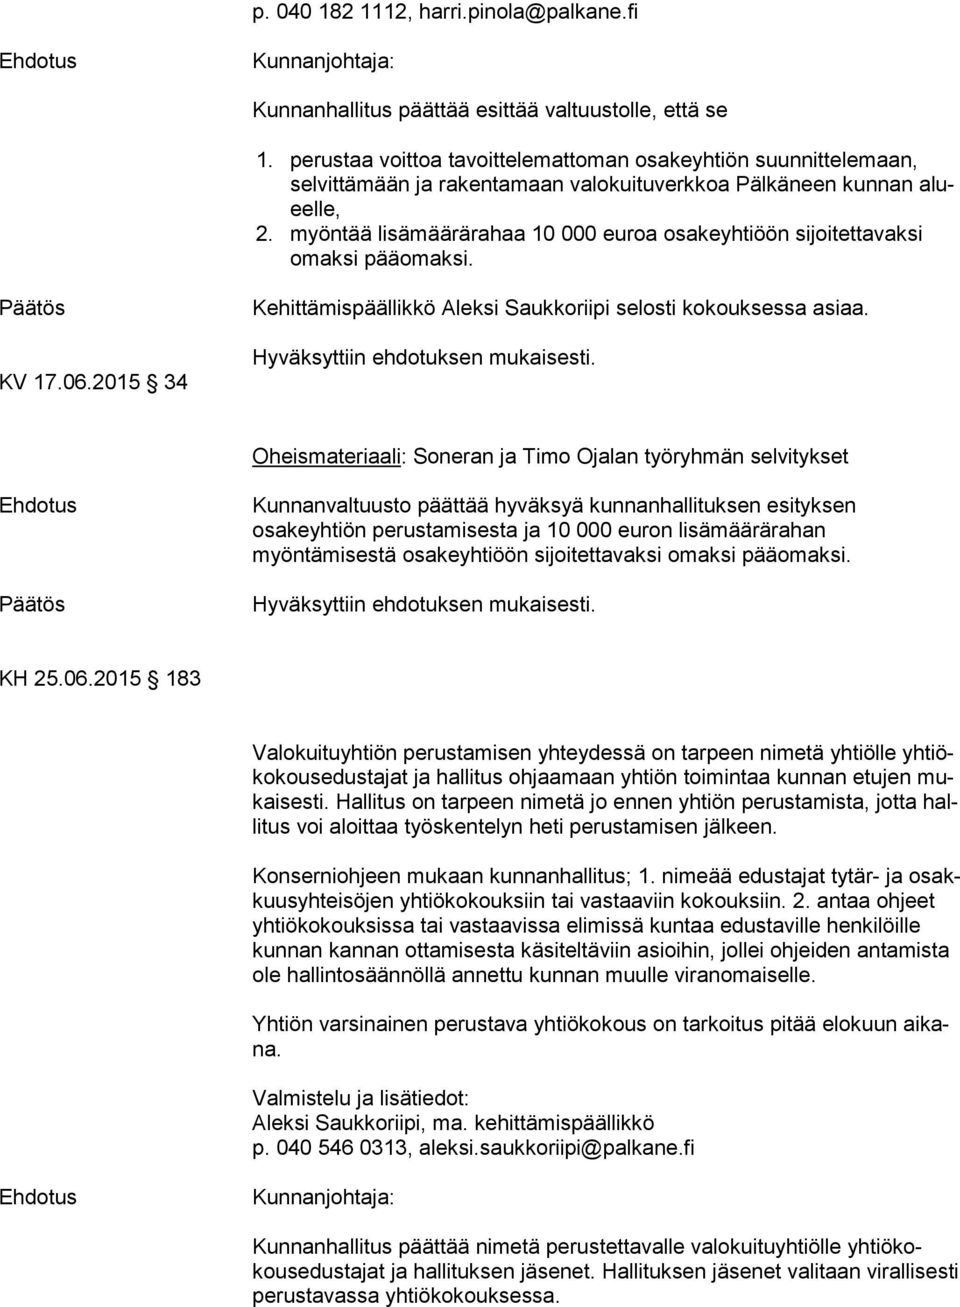 myöntää lisämäärärahaa 10 000 euroa osakeyhtiöön sijoitettavaksi omak si pääomaksi. KV 17.06.2015 34 Kehittämispäällikkö Aleksi Saukkoriipi selosti kokouksessa asiaa.